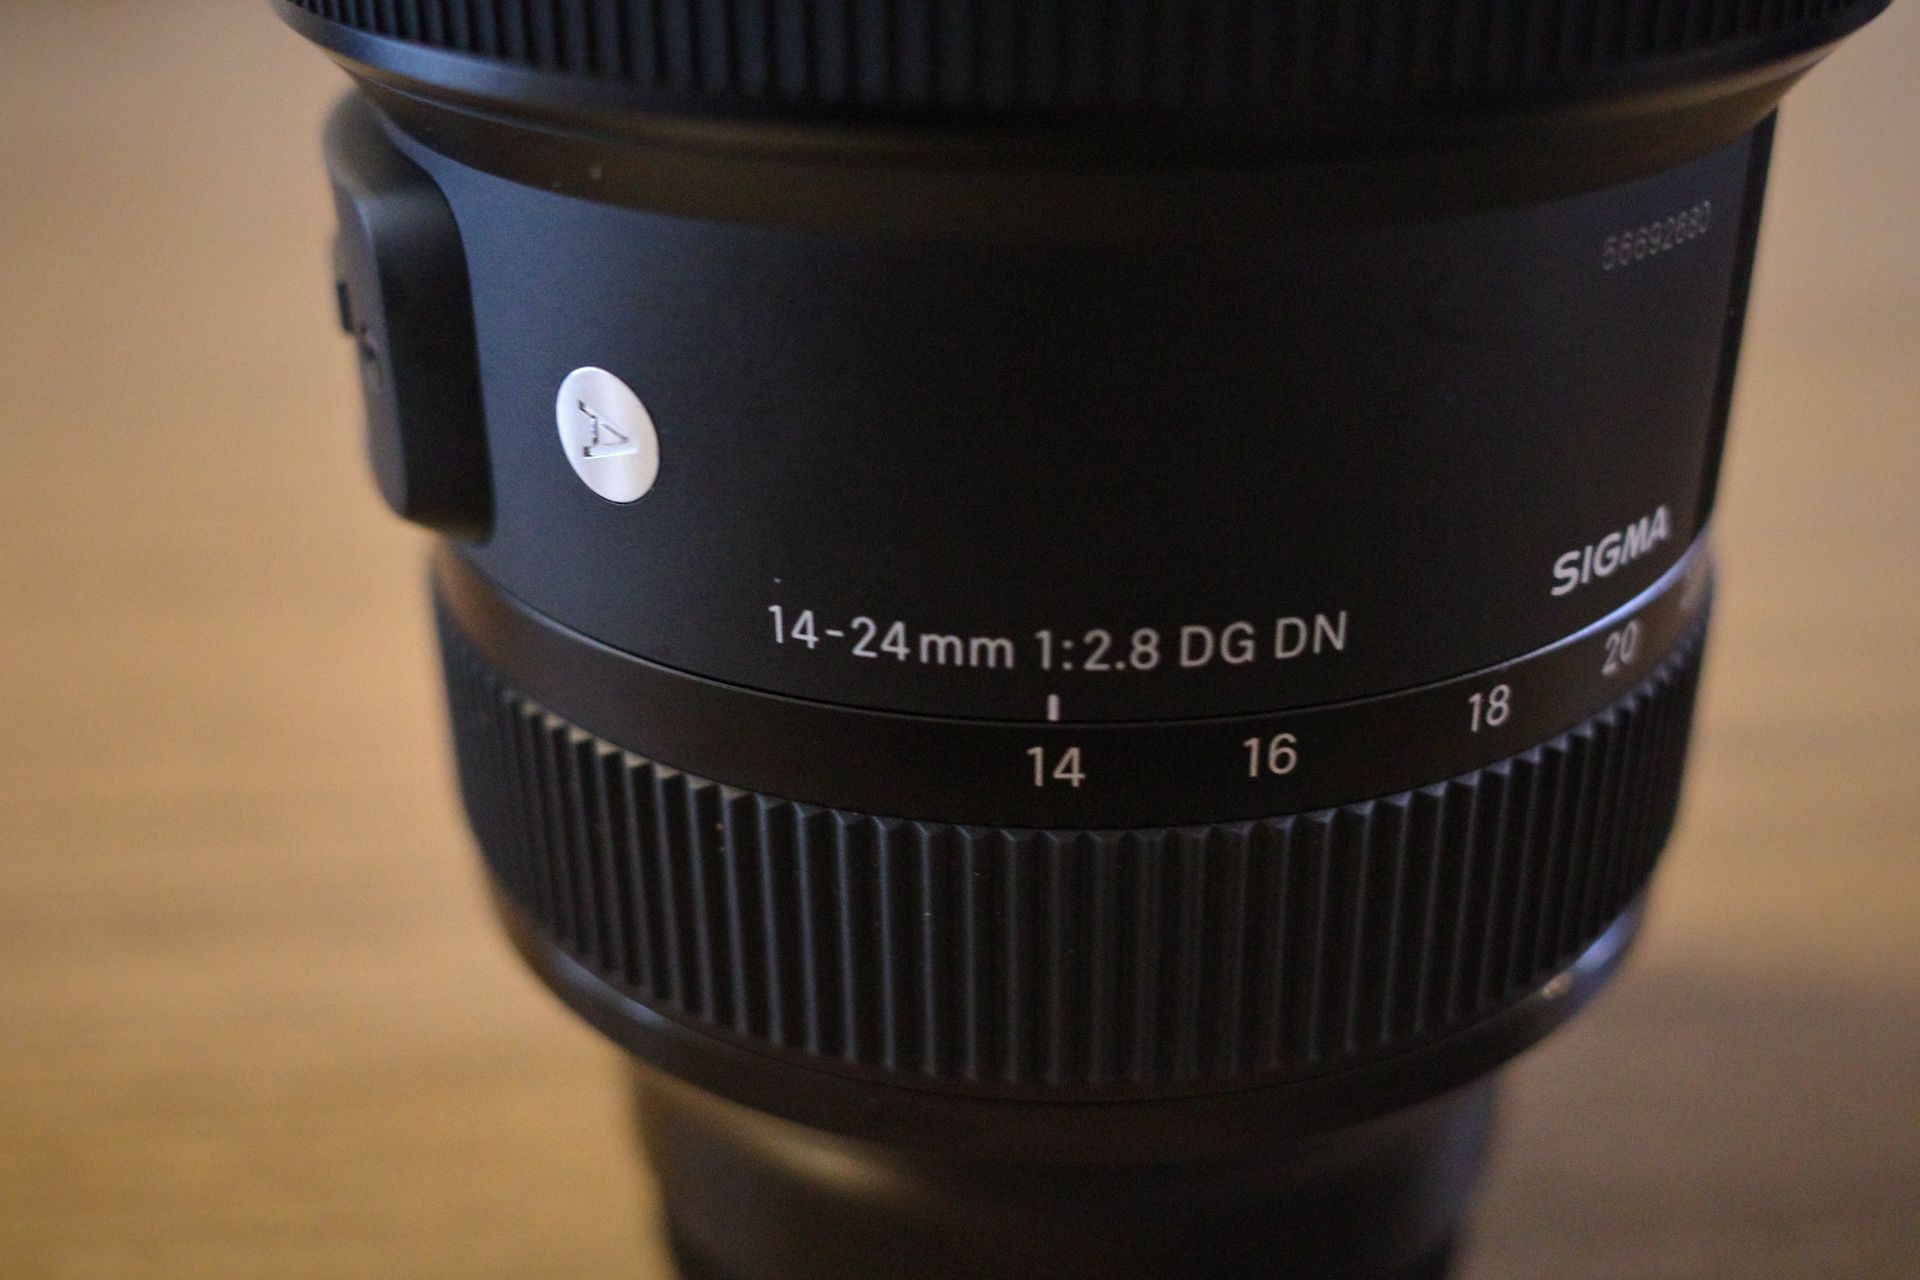 Sigma 14-24 f/2.8 DG DN Full-Frame Lens for Sony E-Mount